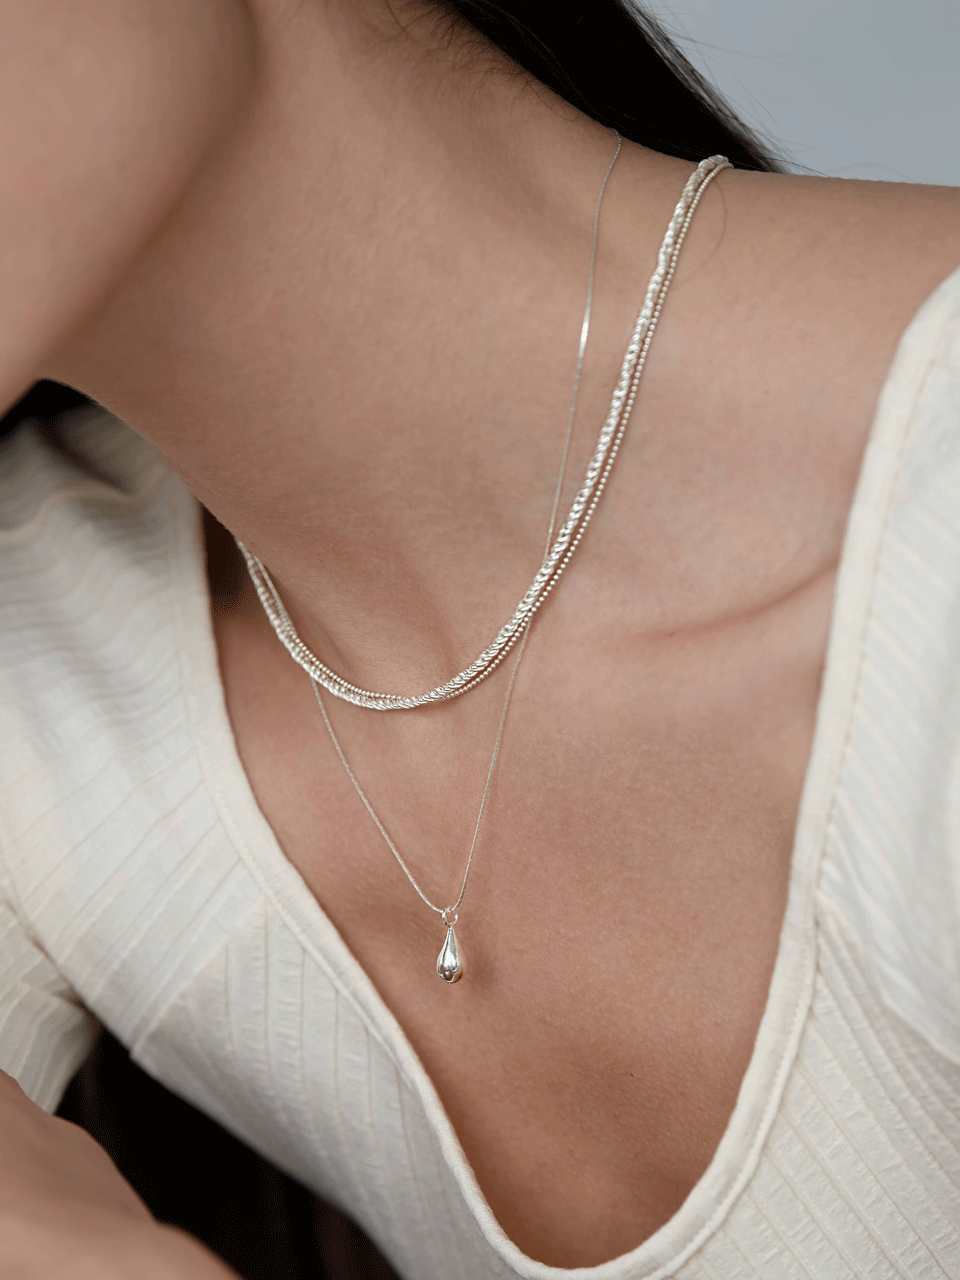 Drop necklace